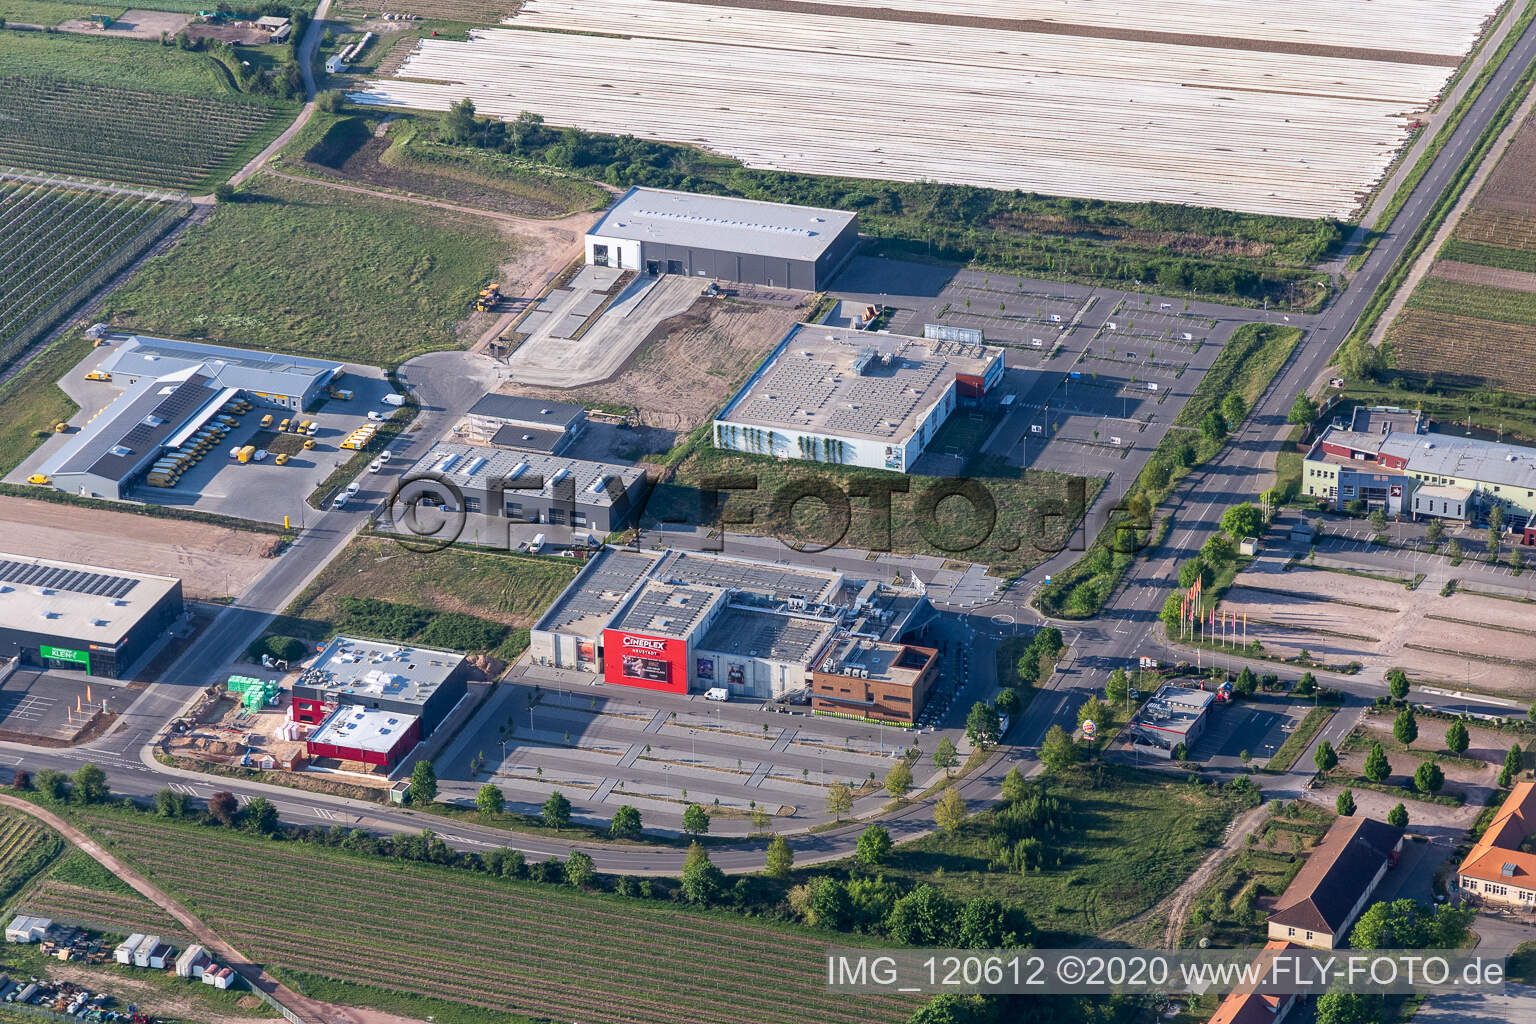 Aerial view of Cineplex in Neustadt an der Weinstraße in the state Rhineland-Palatinate, Germany